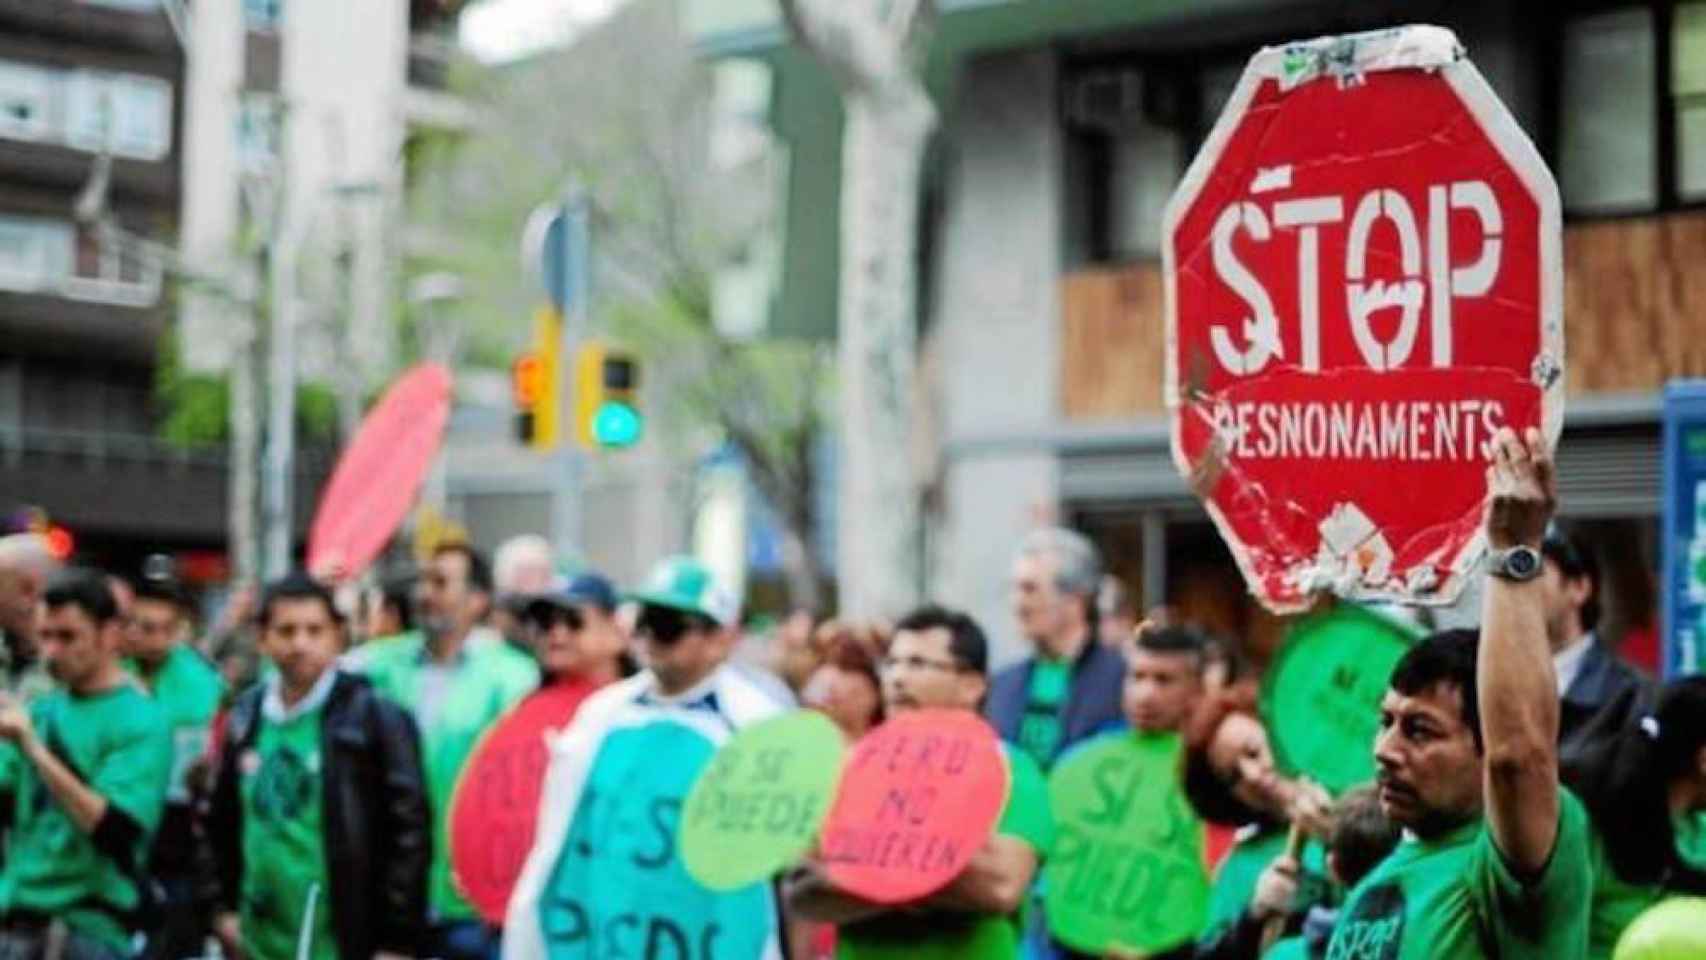 Imagen de una protesta contra los desahucios, organizada por la Plataforma Afectados por la Hipoteca (PAH)